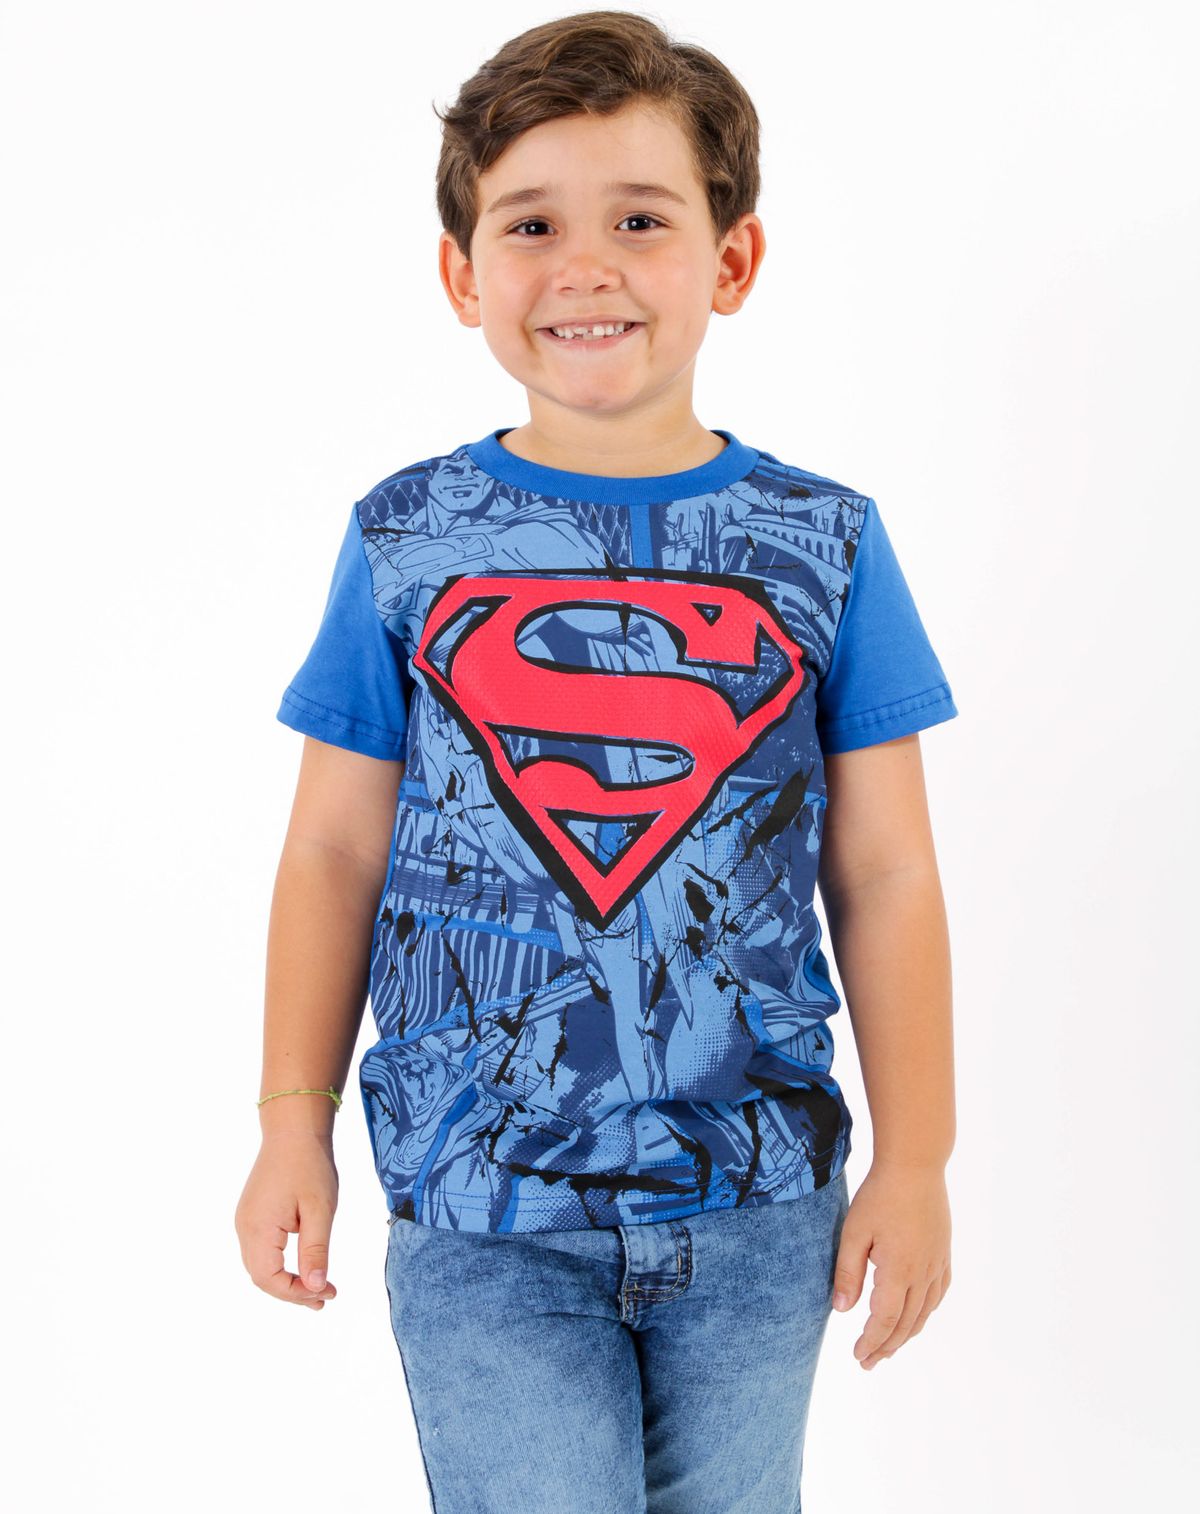 683636004-camiseta-manga-curta-infantil-menino-superman---tam.-4-a-8-anos-royal-10-a5c